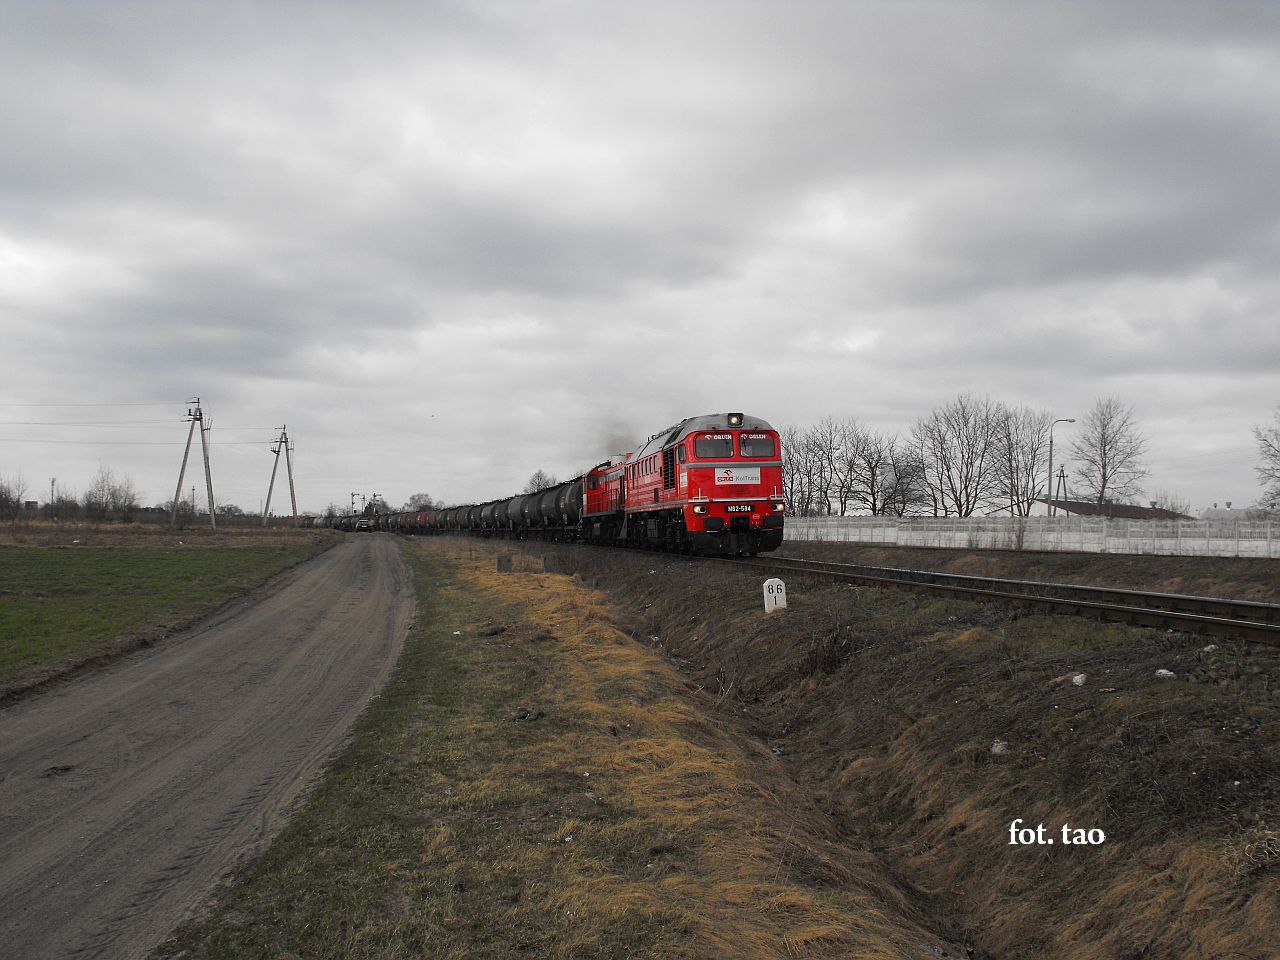 Towarowe lokomotywy KolTrans Orlen rozpdzajc si opuszczaj stacj Sierpc, wracaj do Pocka, 3.04.2011 r.